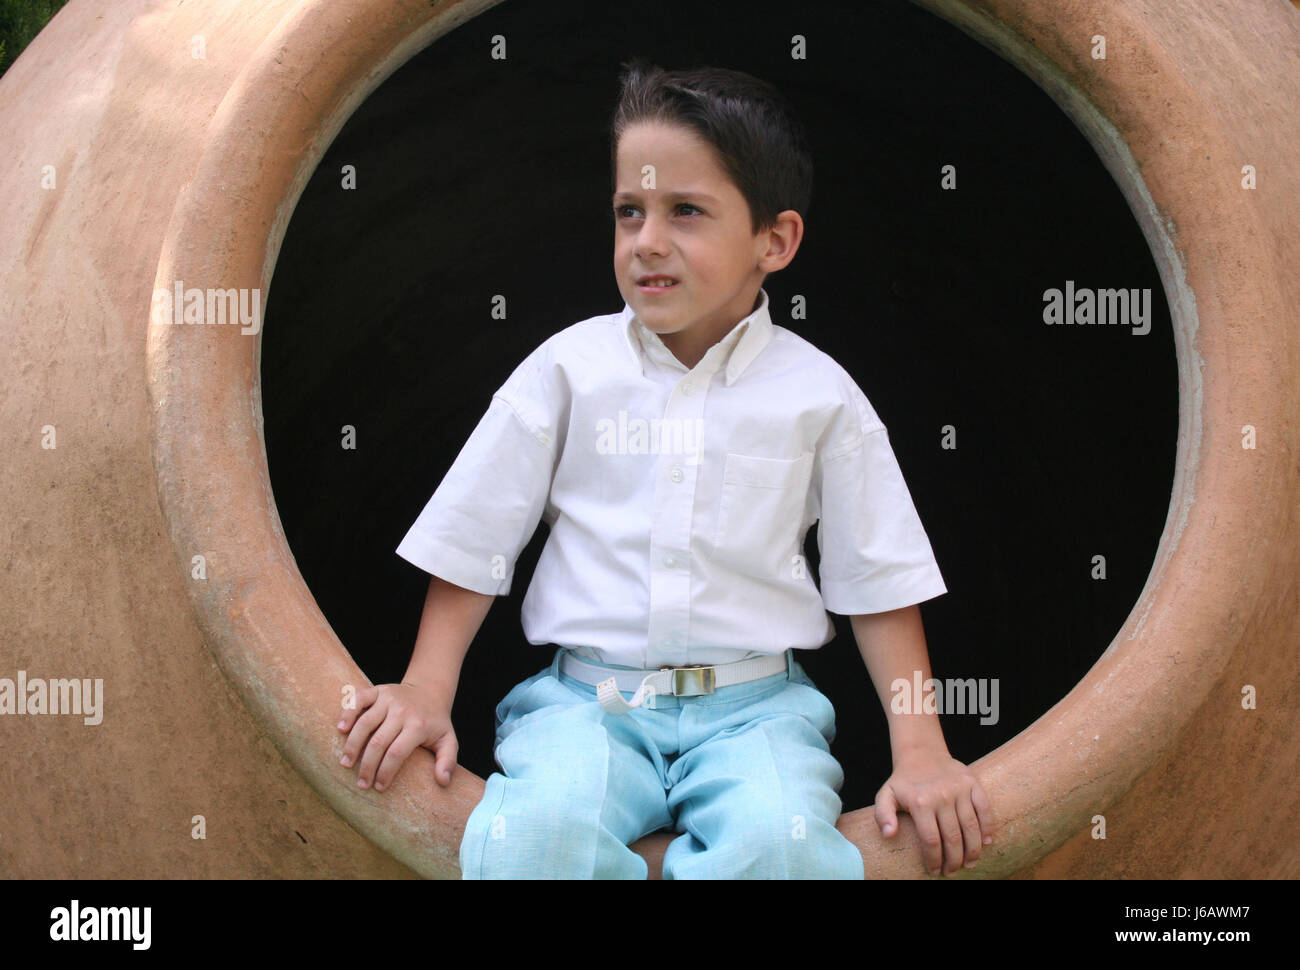 boy in ceramic barrel Stock Photo